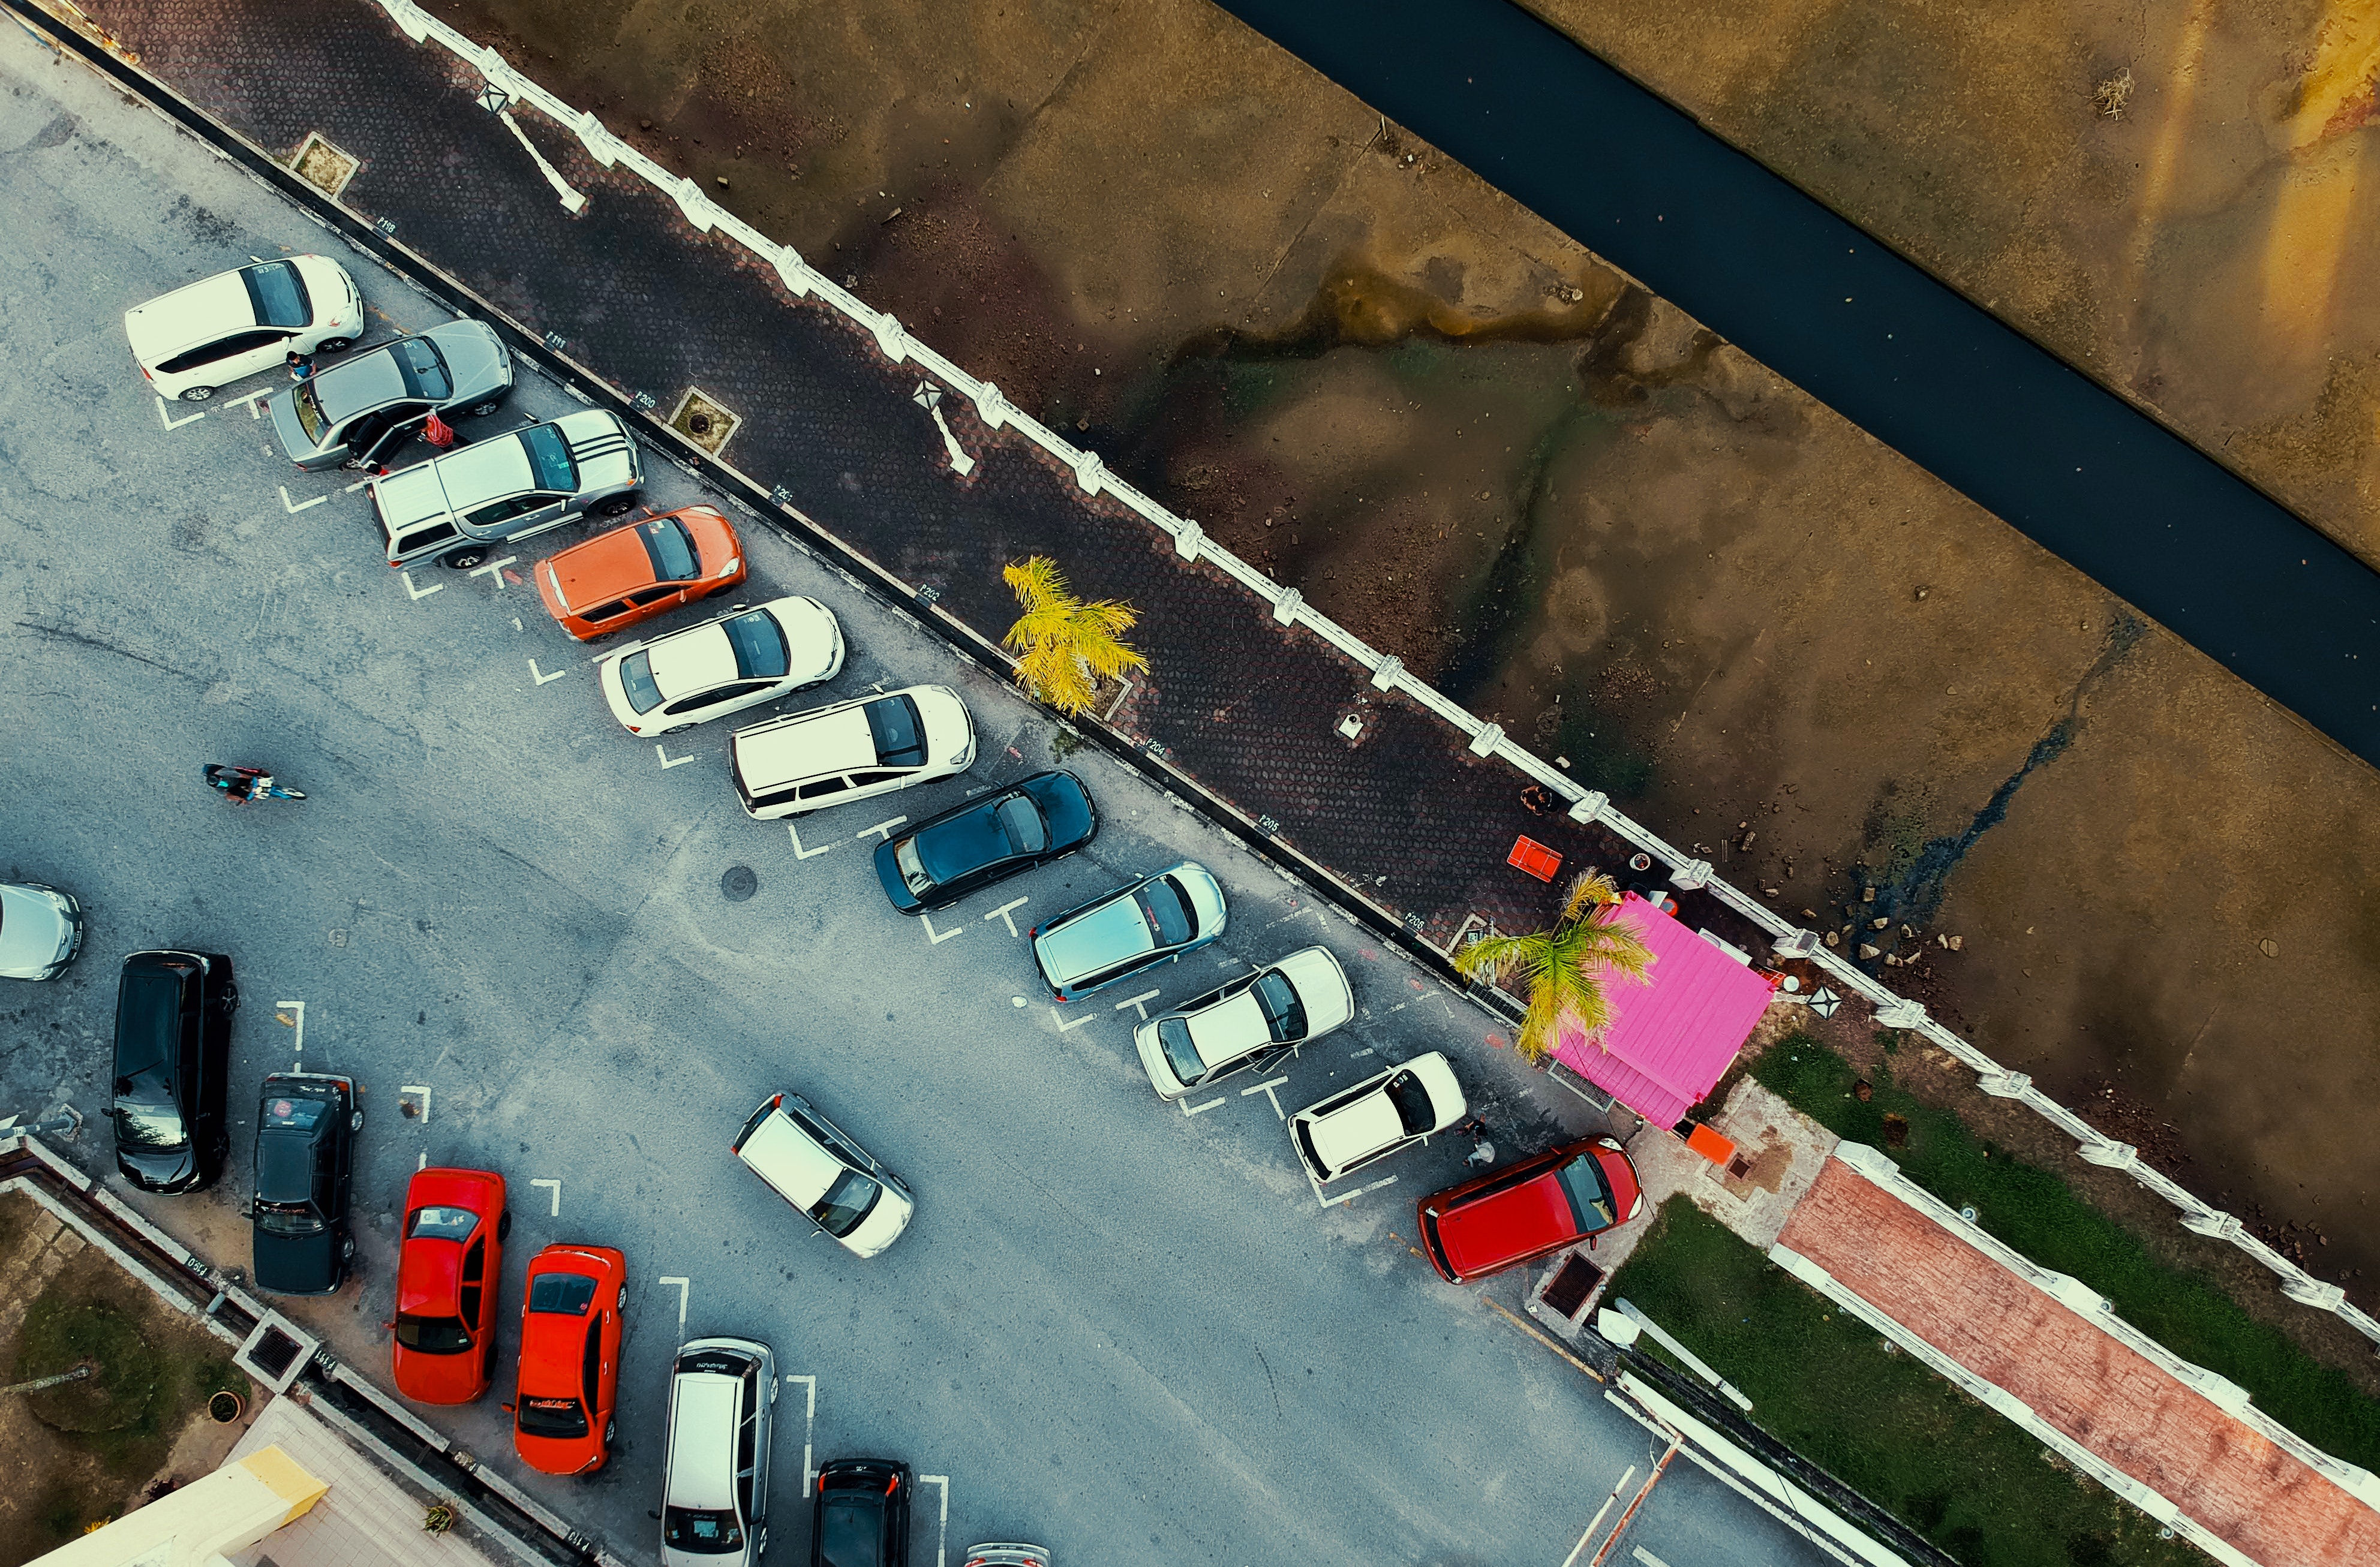 Bird's eye view of a parking lot